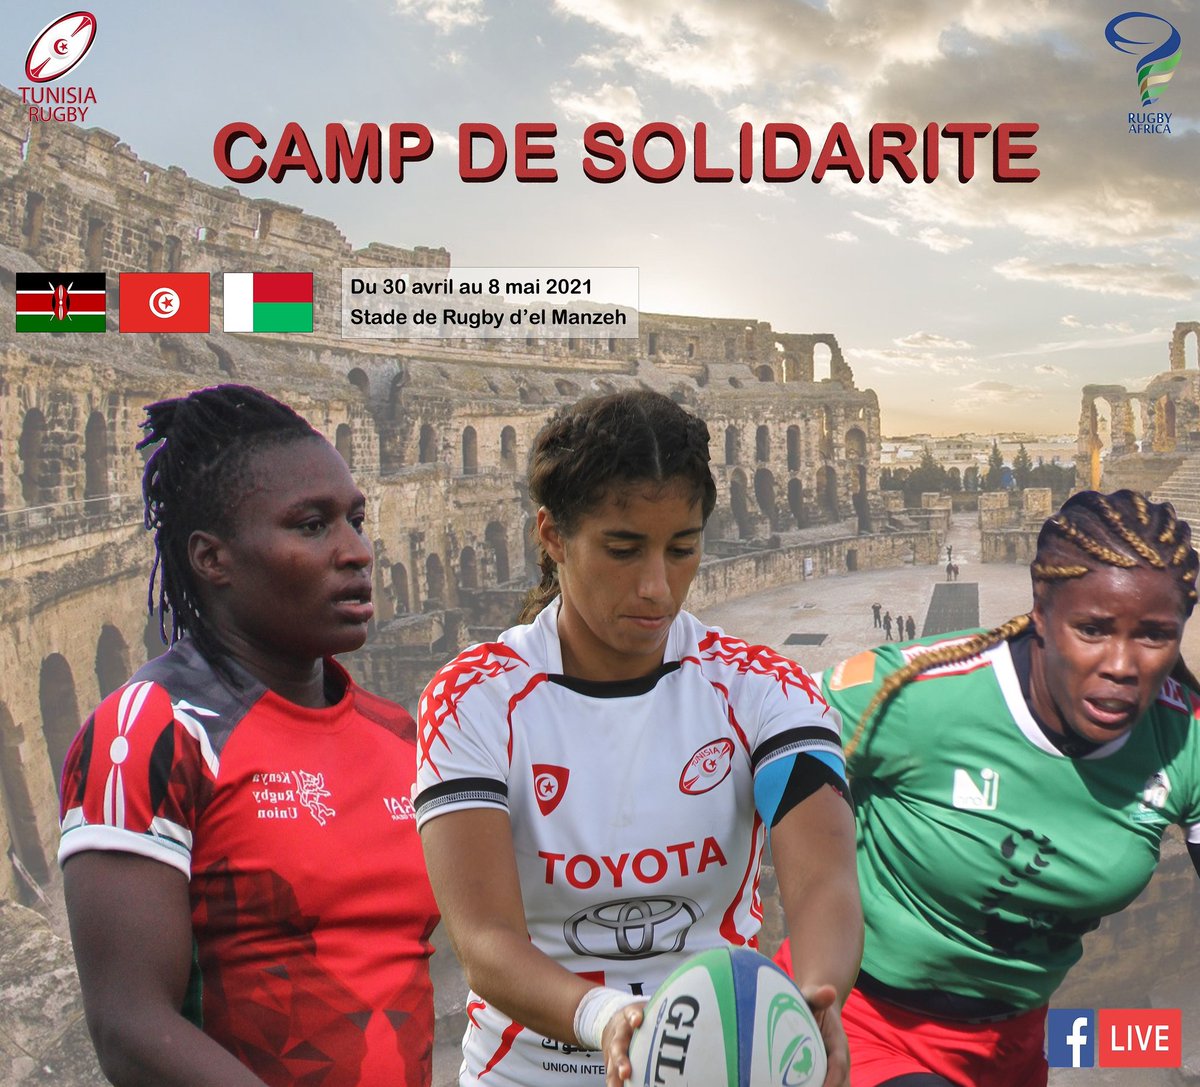 🏉Camp de solidarité : Du 30 avril au 08 mai 2021 au stade de rugby d'el Manzeh «Kenya-Tunisie-Madagascar» 🏉Programme : Du 1 au 2 mai 2021 : Premier tournoi (À partir de 9H30) Du 3 au 6 mai 2021 : Camp d’entrainement Du 7 au 8 mai : Tournoi final (À partir de 9H30) 🇰🇪 🇹🇳 🇲🇬